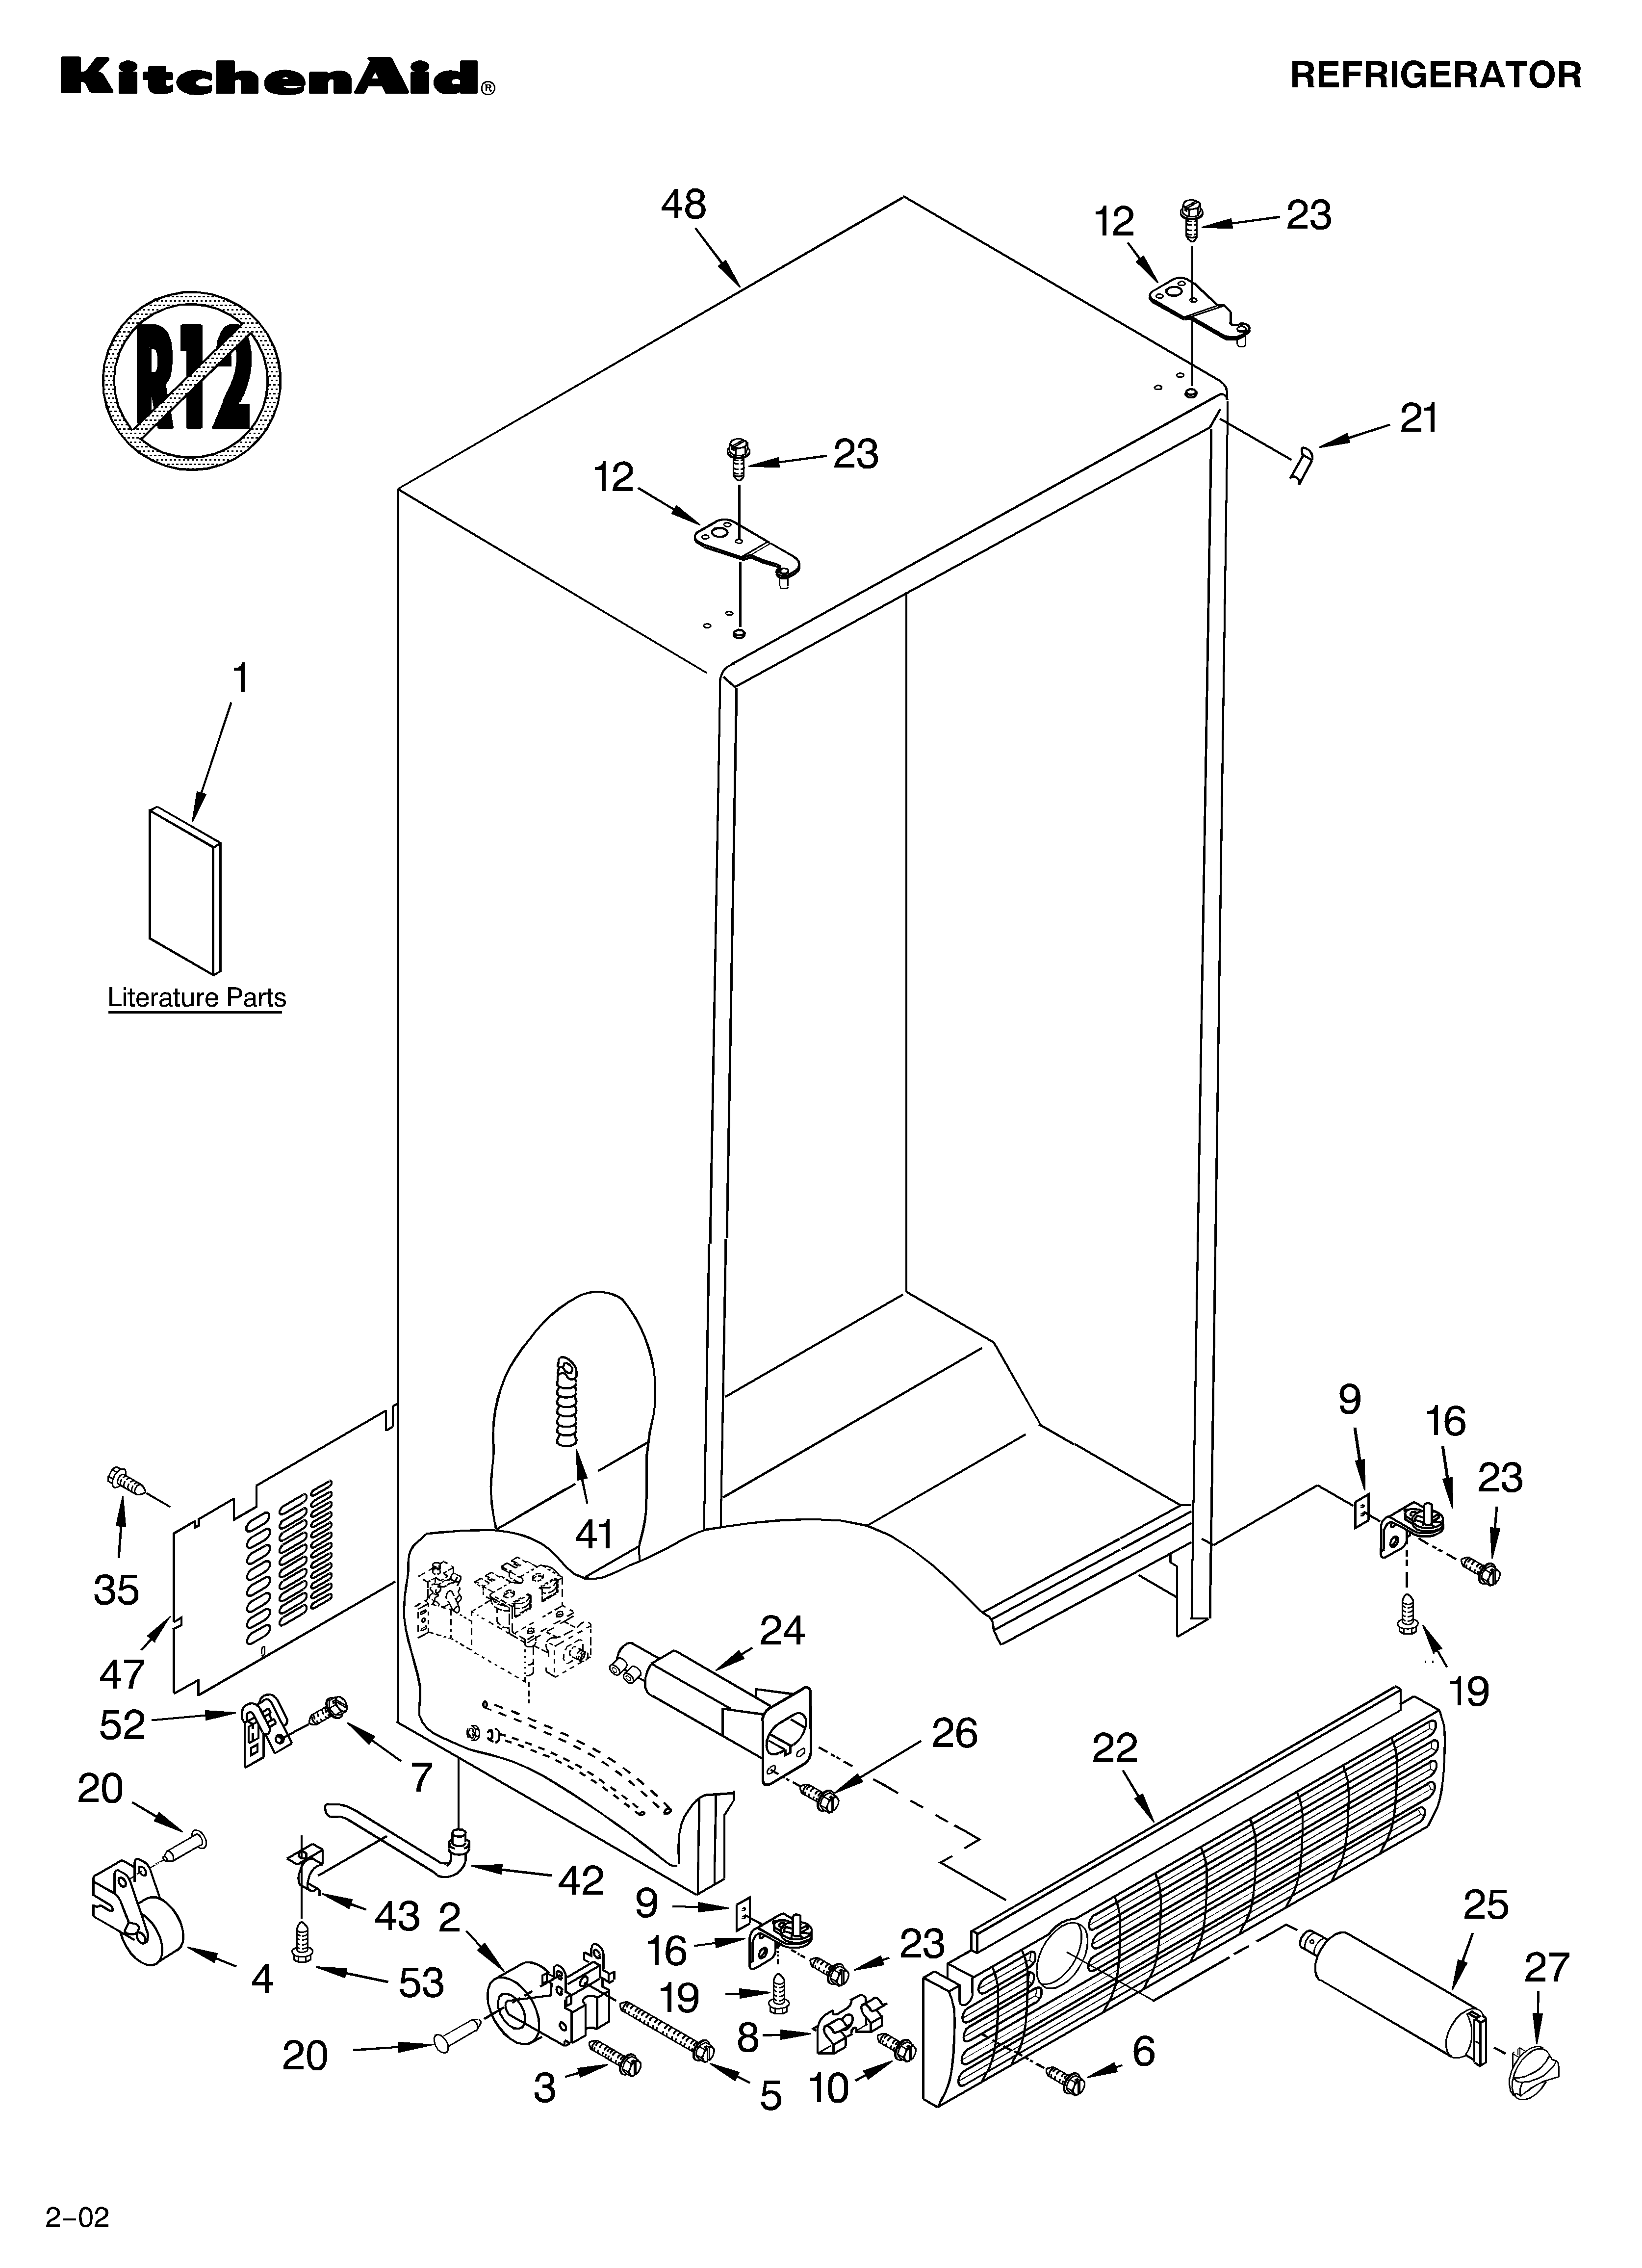 KITCHENAID REFRIGERATOR Parts | Model KSBS25FKBL01 | Sears ... kitchenaid ice maker wiring diagram 